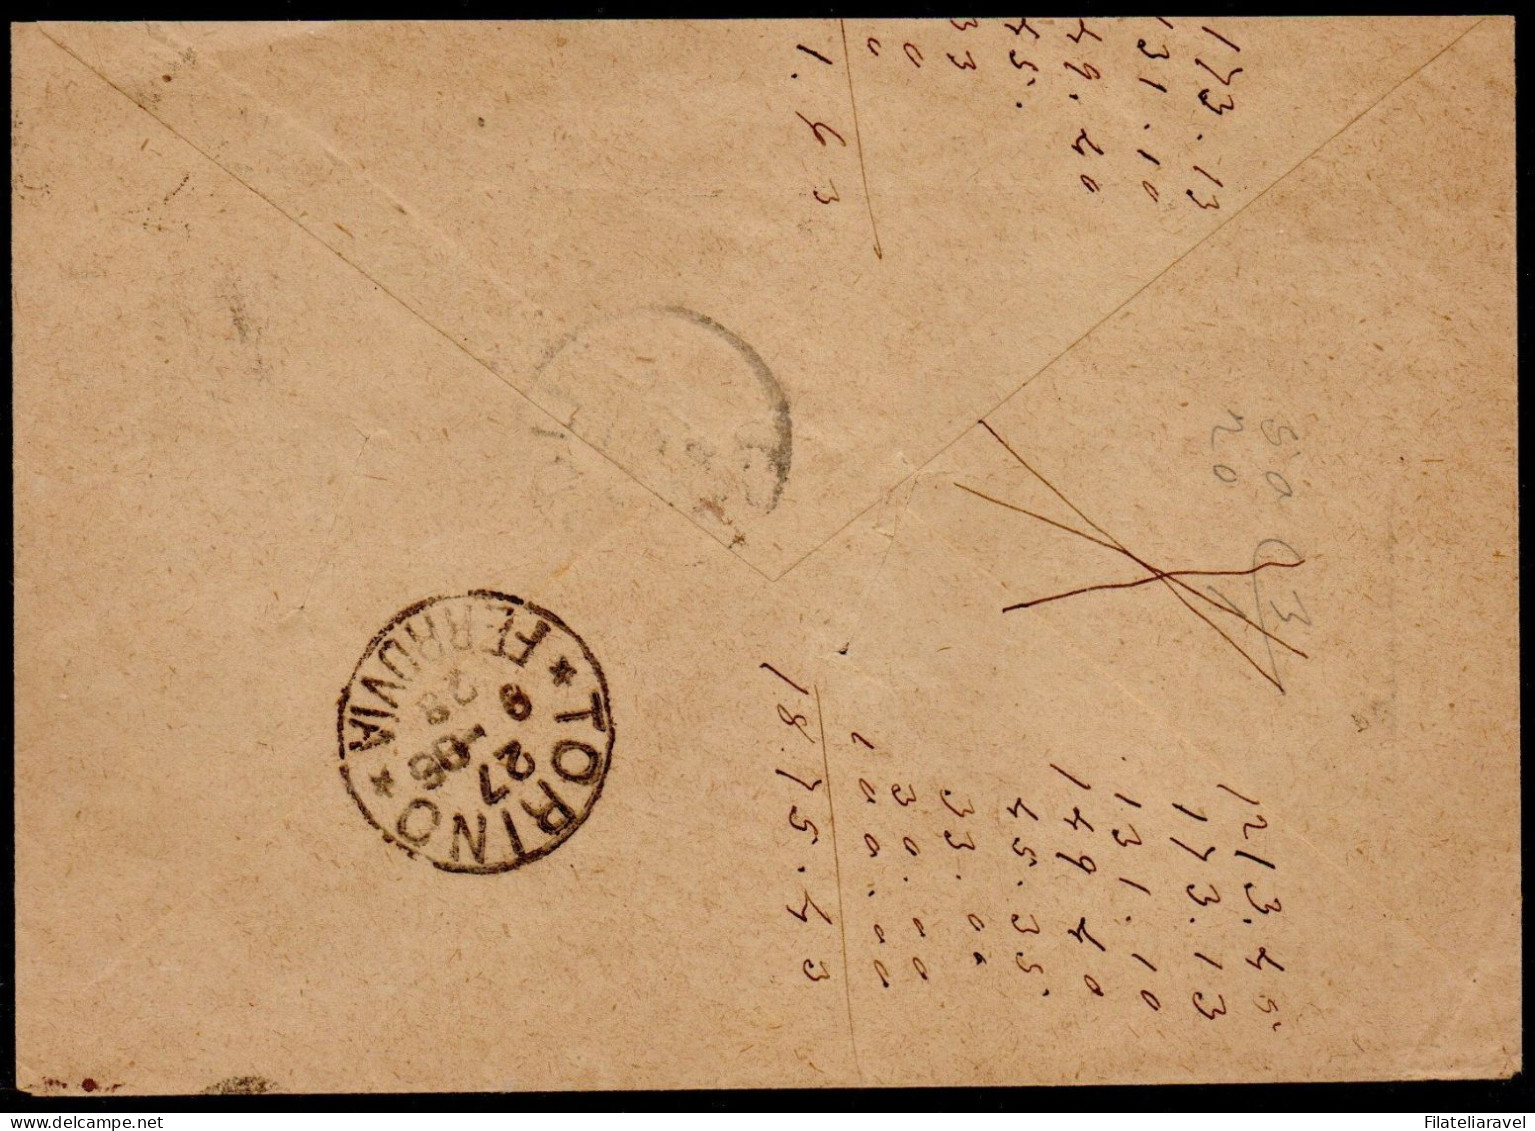 Francia - 1877/1945 - Storia Postale, piccolo lotto composto da n.7 lettere viaggiate.